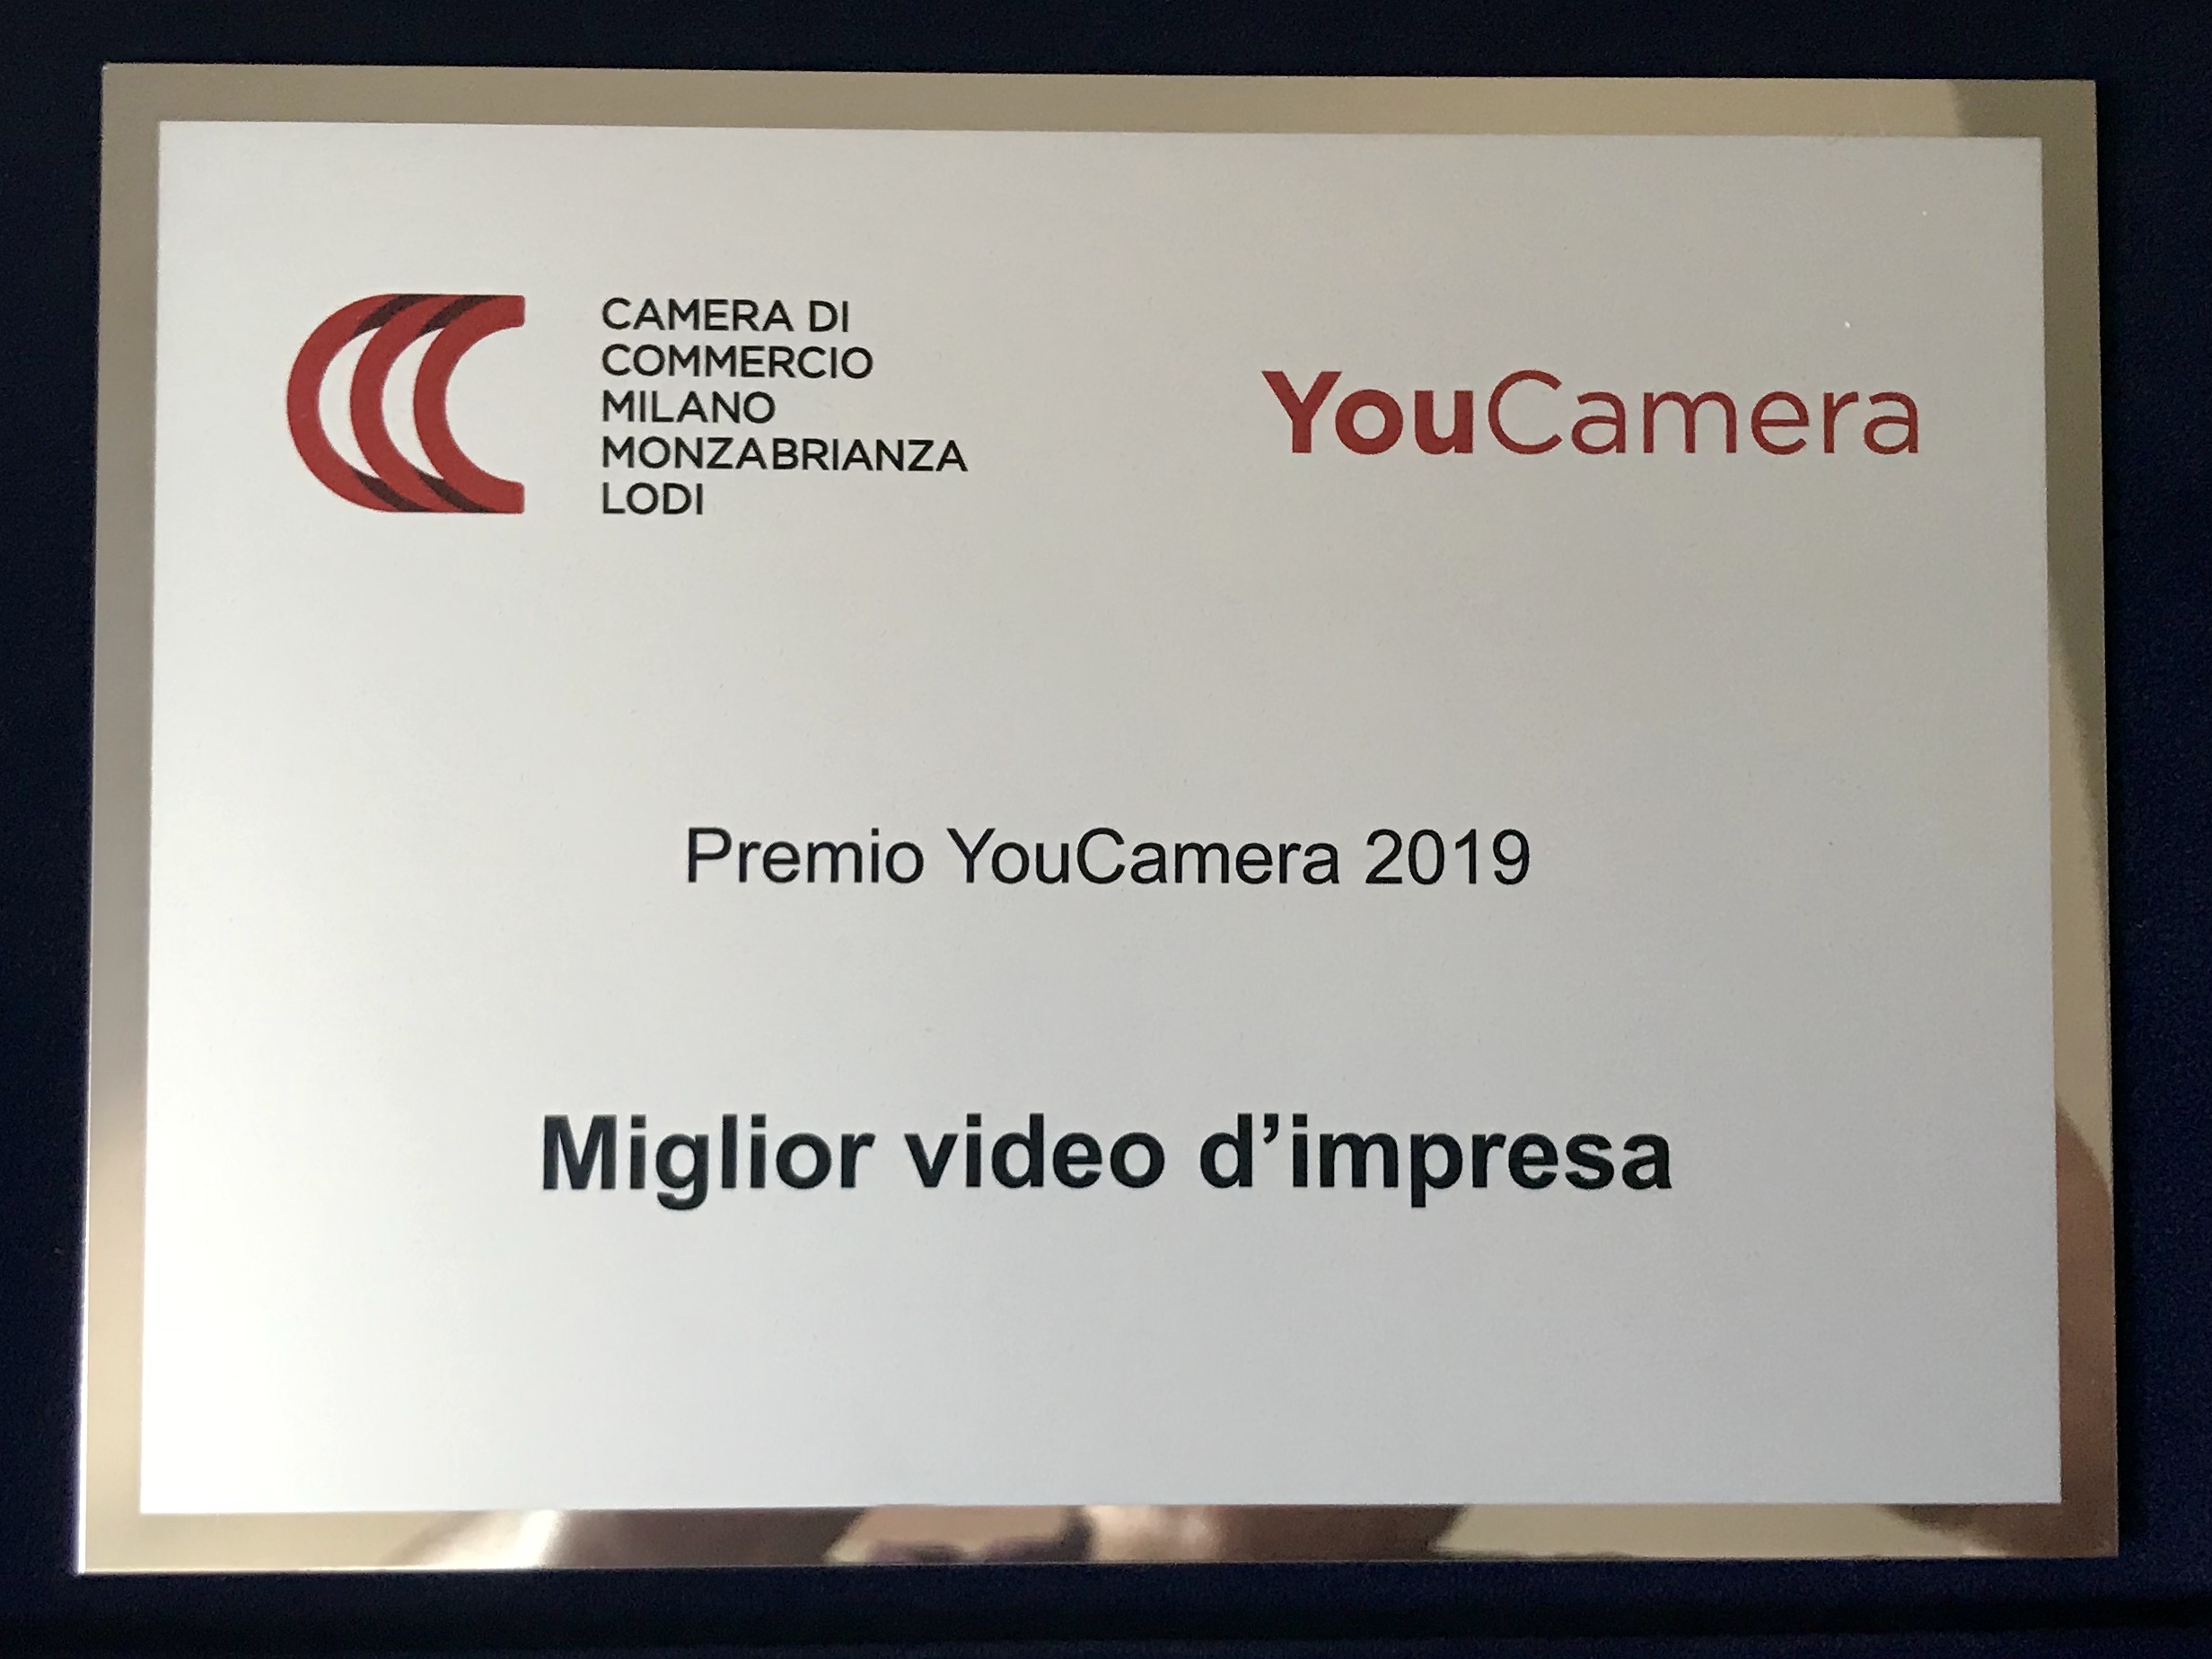 KnowAndBe.live riceve il premio "YouCamera" 2019 per il miglior video d'impresa - Knowandbe.live